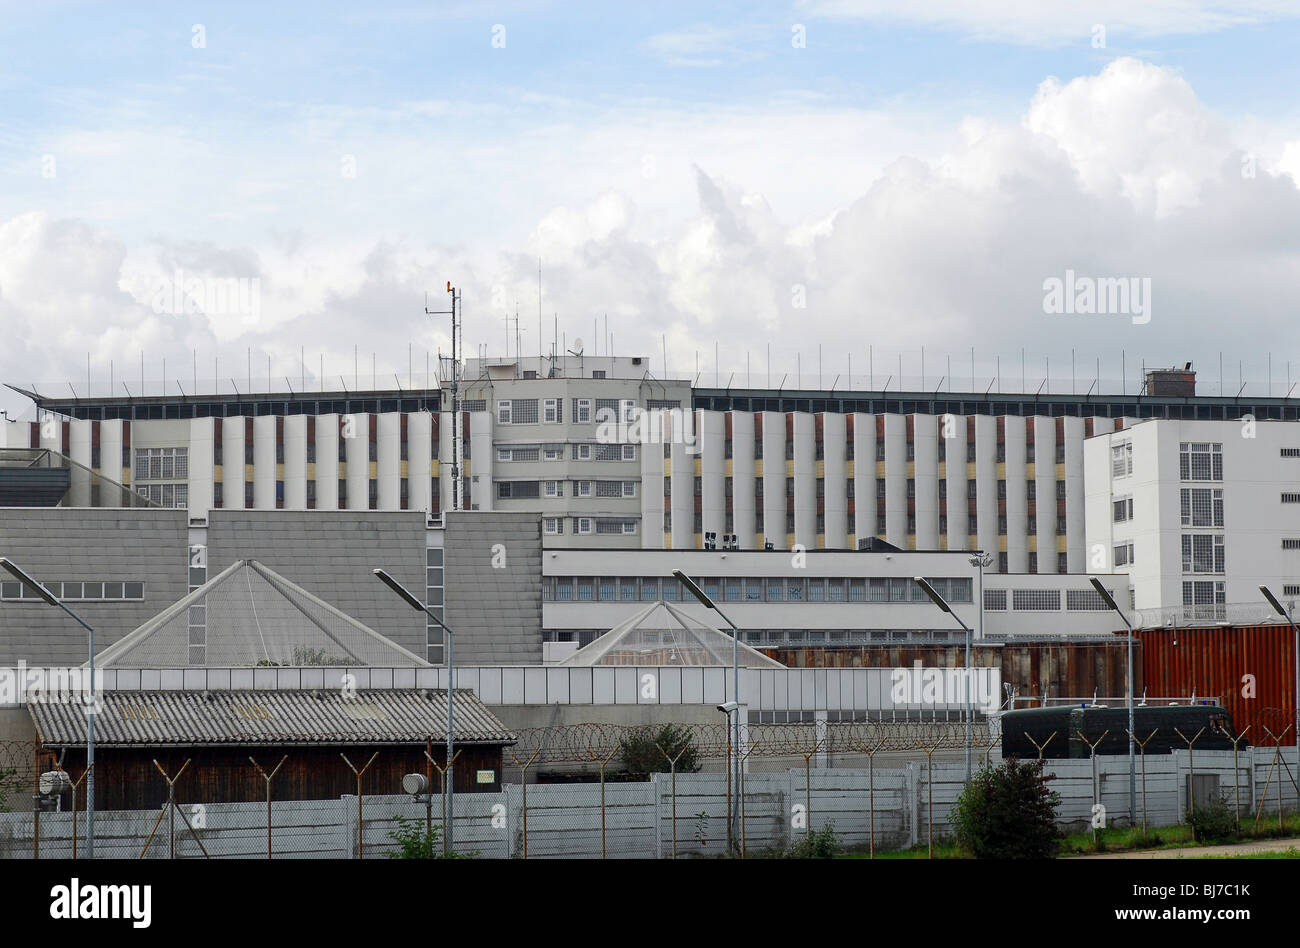 La prison de Stammheim, Stuttgart, Allemagne Banque D'Images